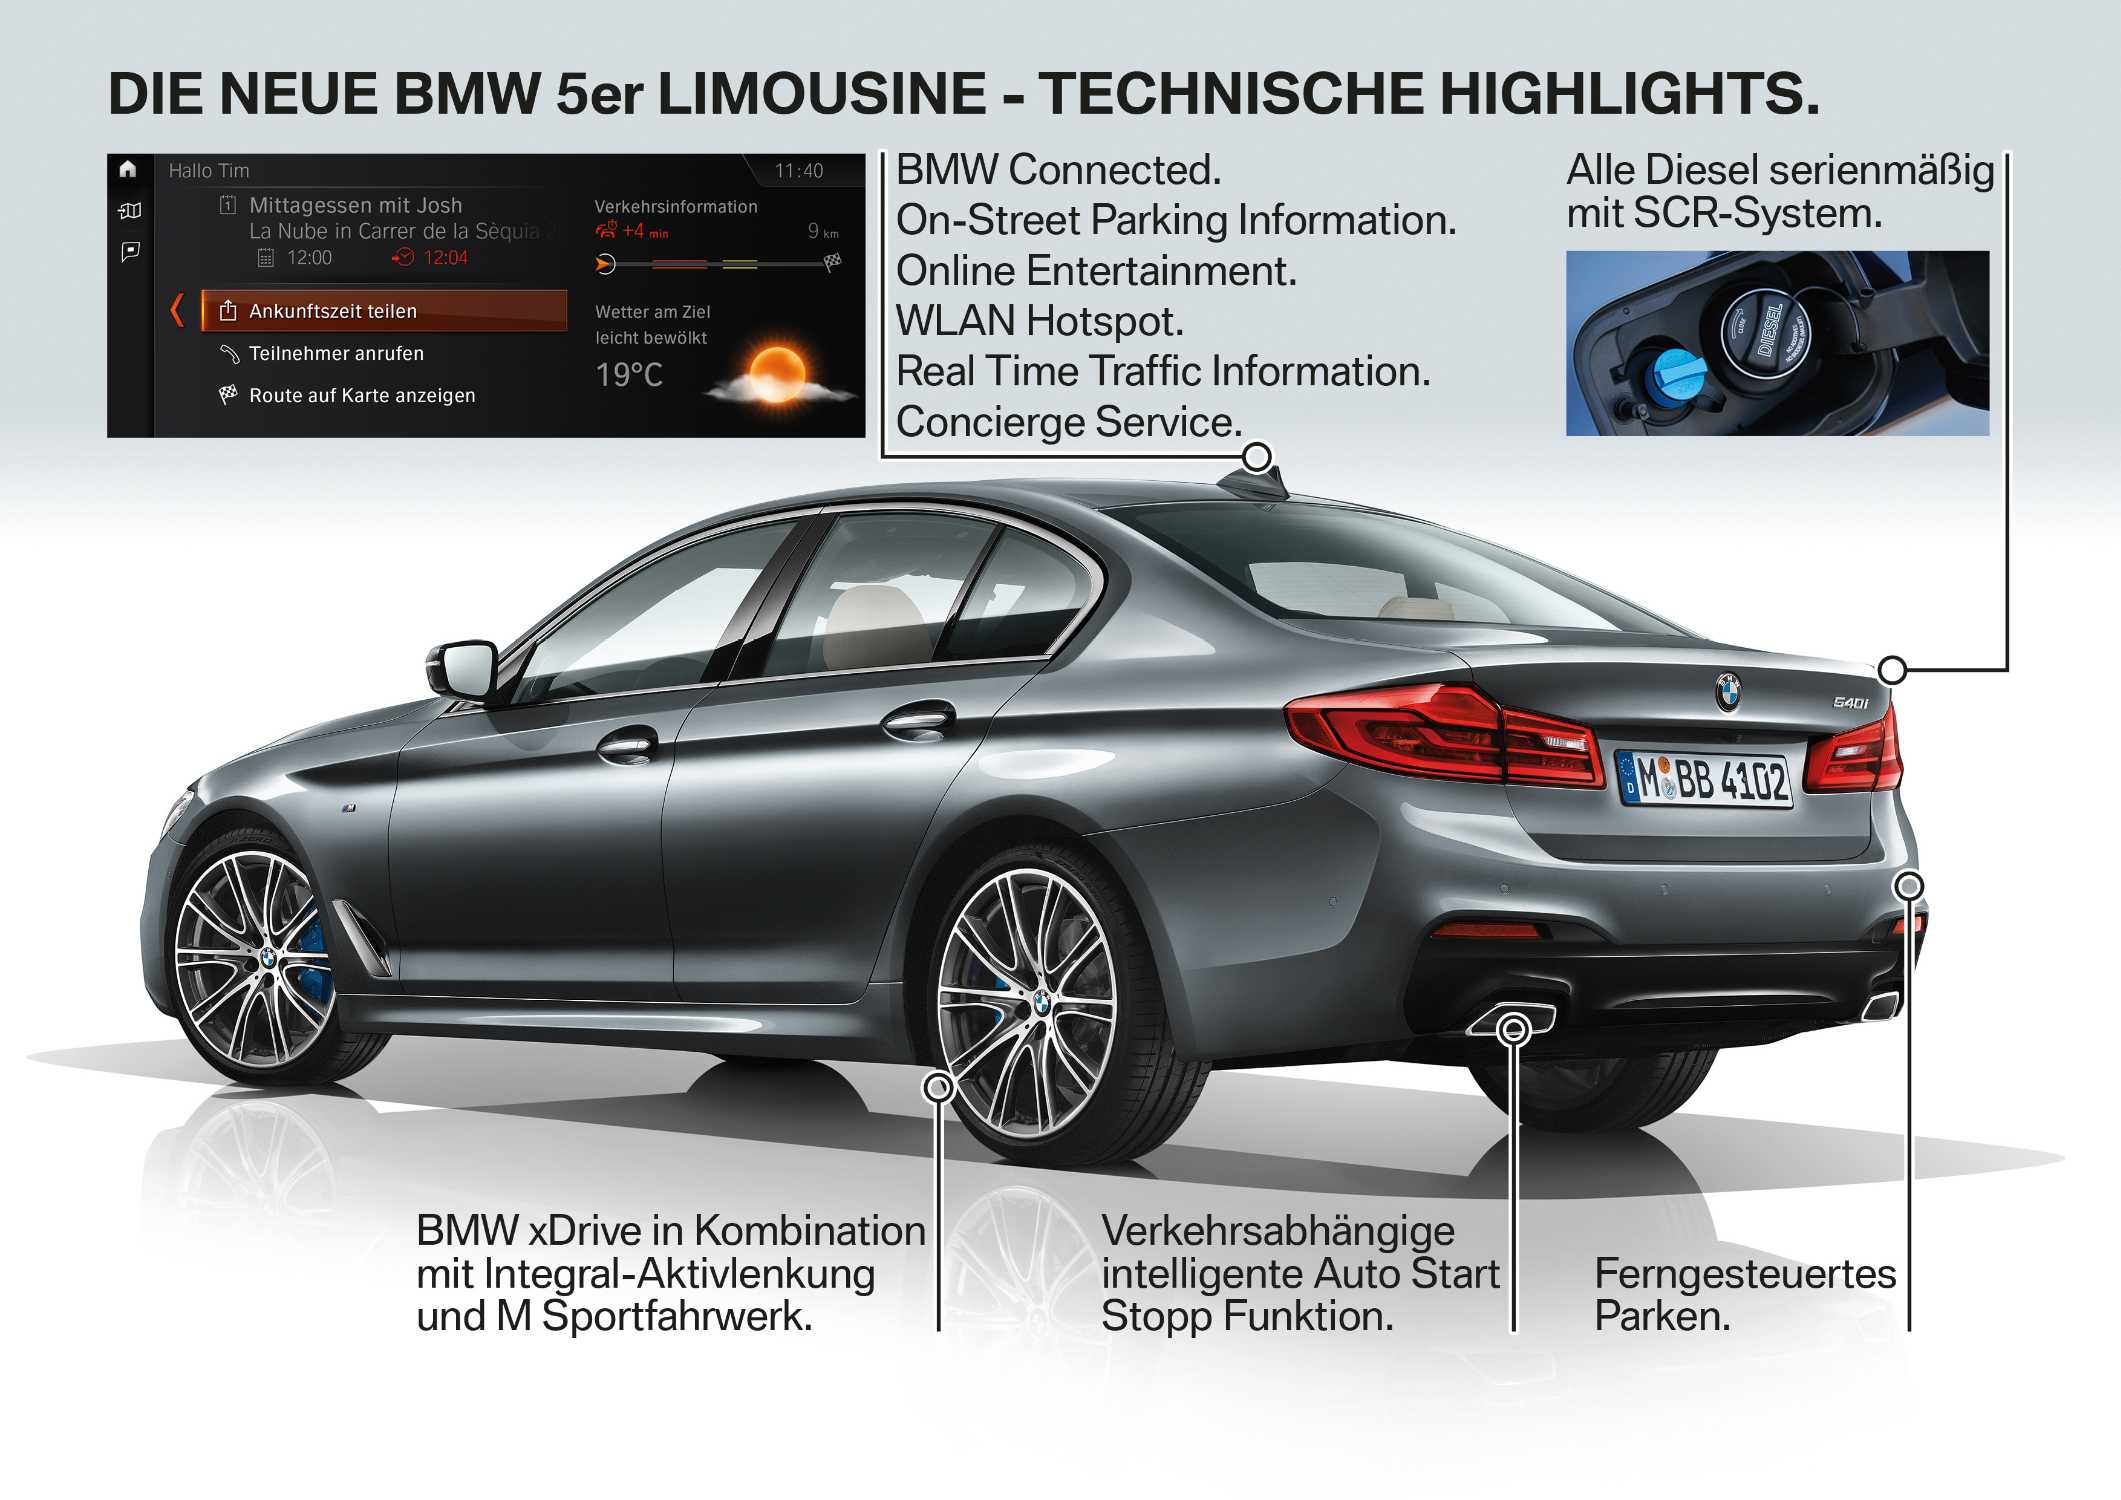 Die neue BMW 5er Limousine (10/2016).